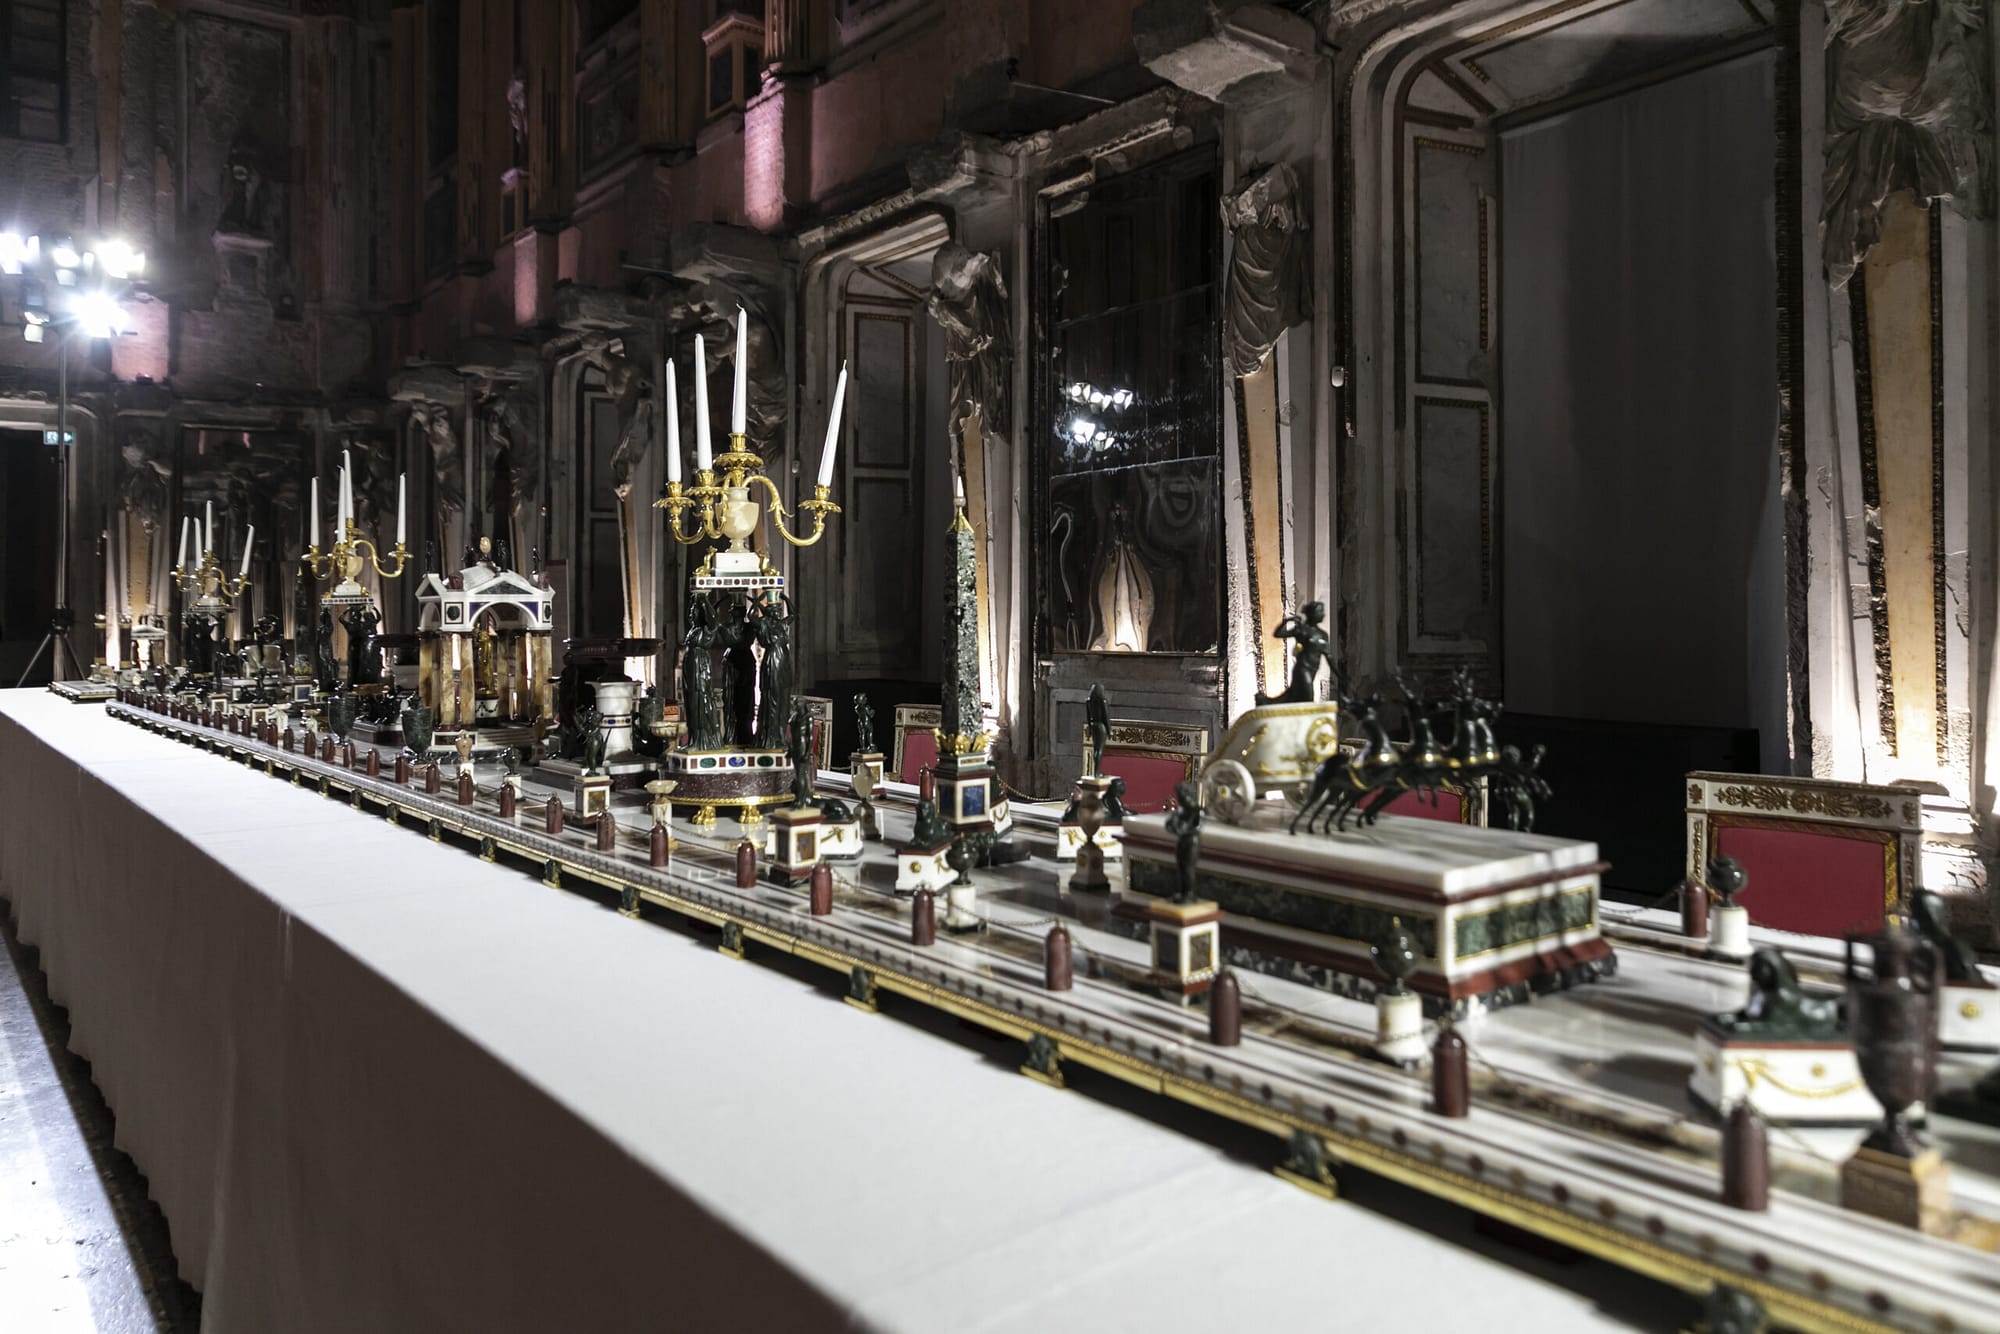 Il Centrotavola Napoleonico restaurato grazie a Uvet e Fondazione Atlante presentato a Palazzo Reale